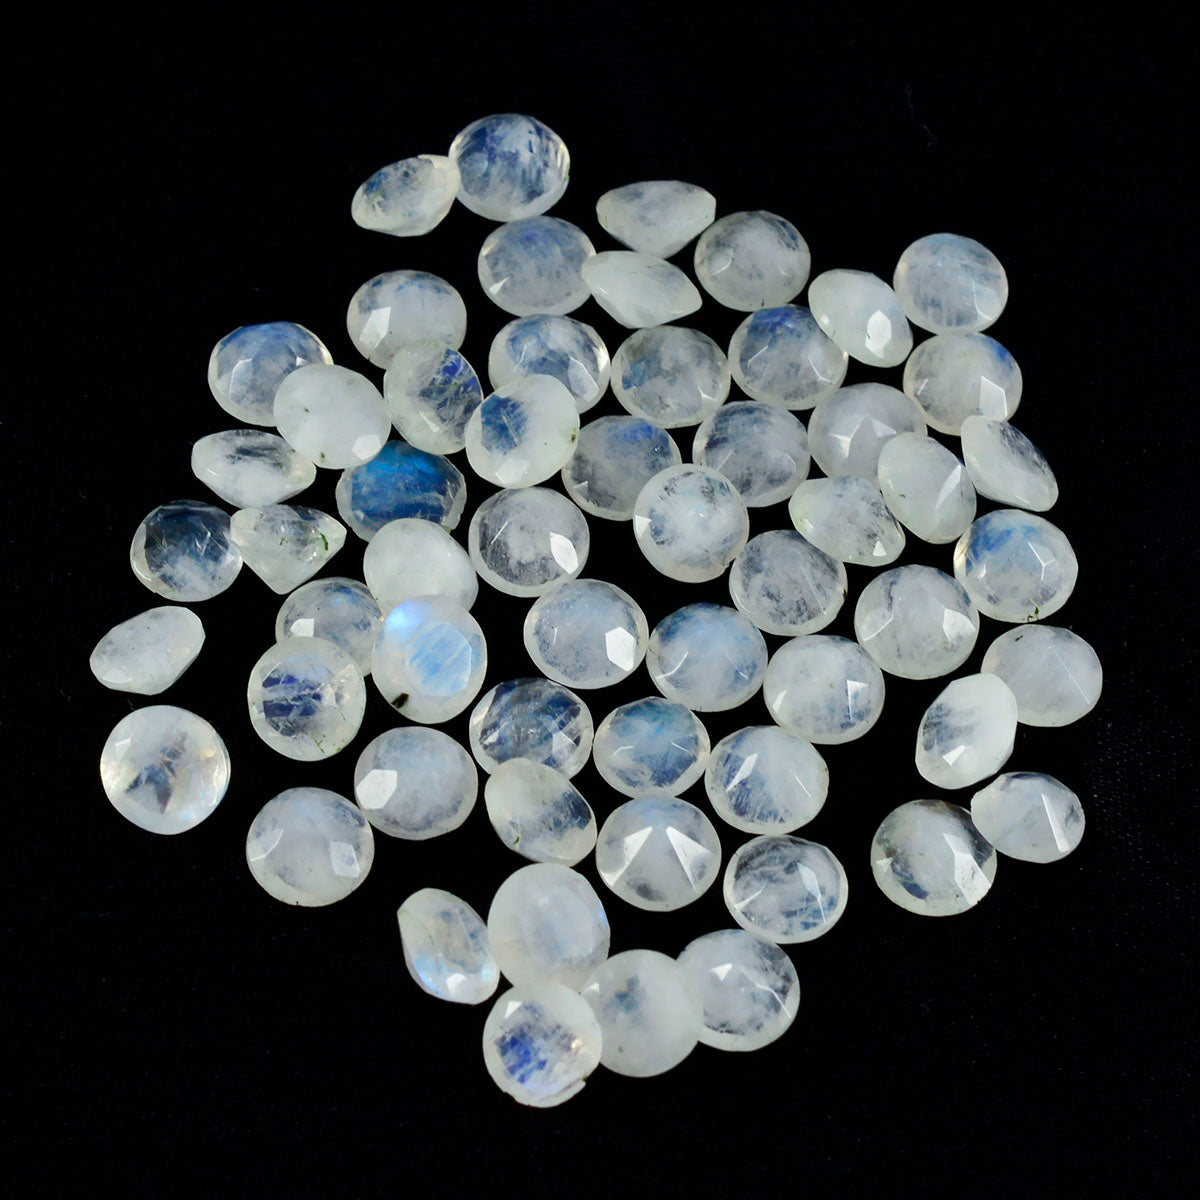 riyogems 1шт белый радужный лунный камень ограненный 3x3 мм круглый драгоценный камень отличного качества